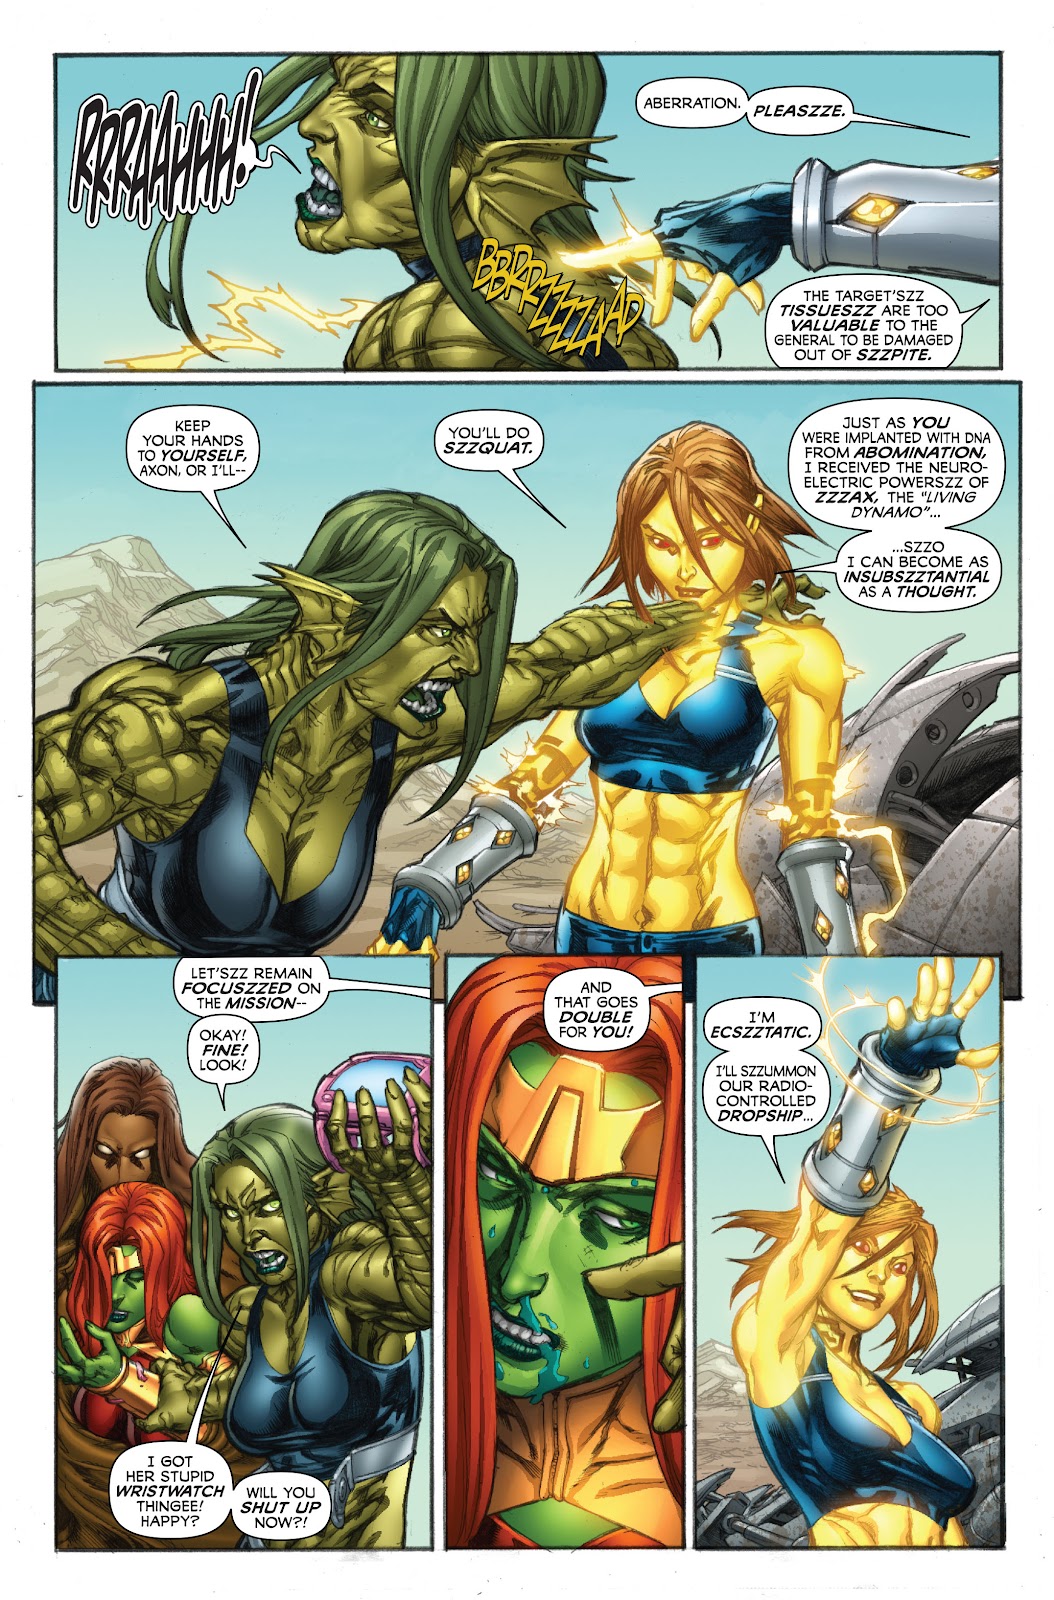 Incredible Hulk V1 602 Read Incredible Hulk V1 602 Comic Online In